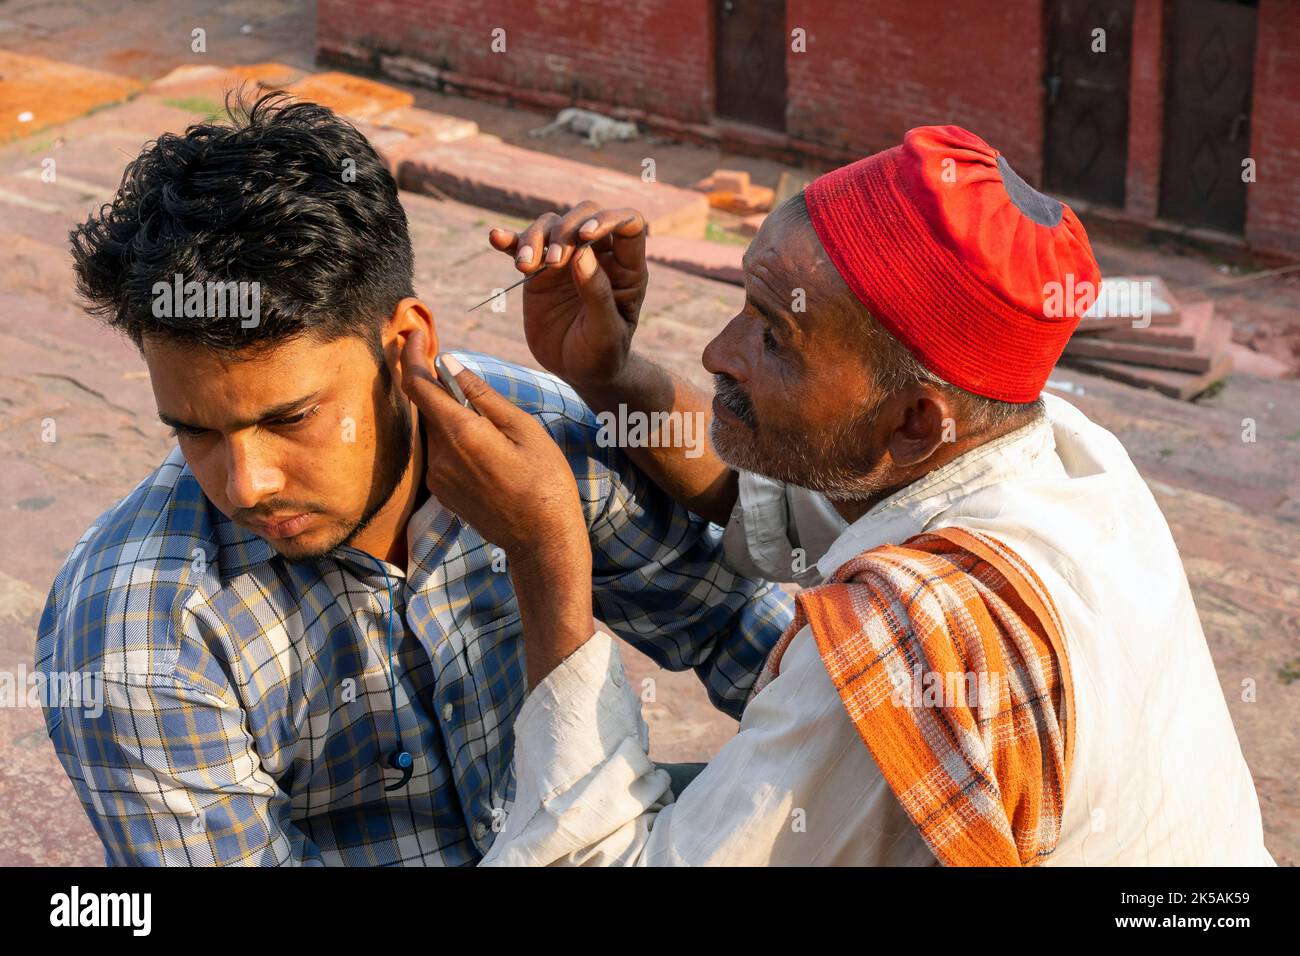 NEU-DELHI - SEP 17: Indischer Straßenarbeiter mit einer Nadel, die am 17. September in einer Straße in Neu-Delhi das Ohr einer Person reinigt. 2022 in Indien. Stockfoto